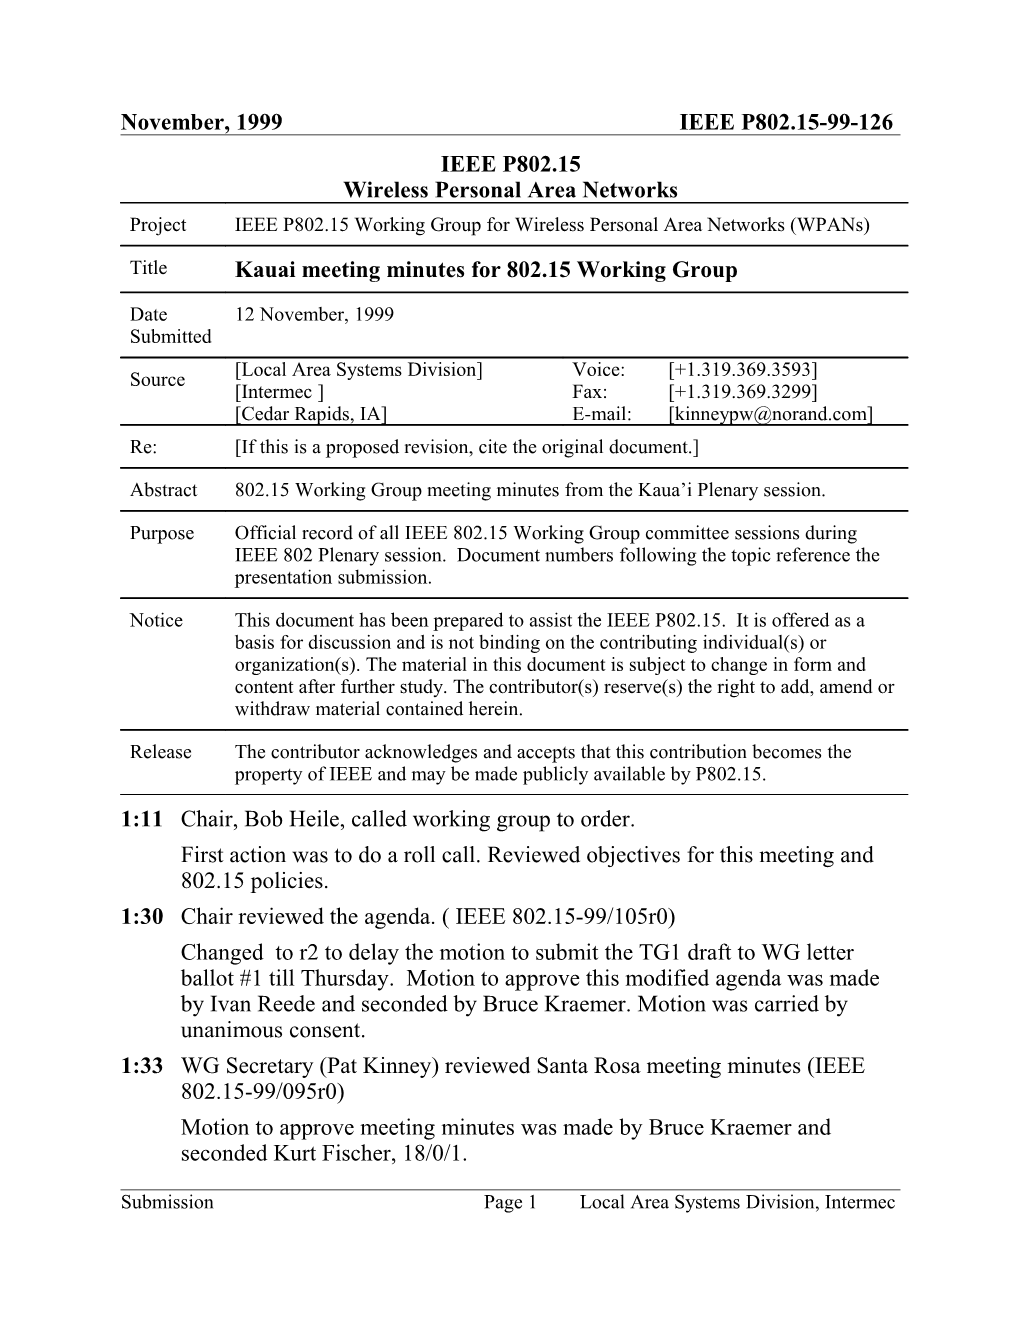 Kauai Meeting Minutes for 802.15 Working Group